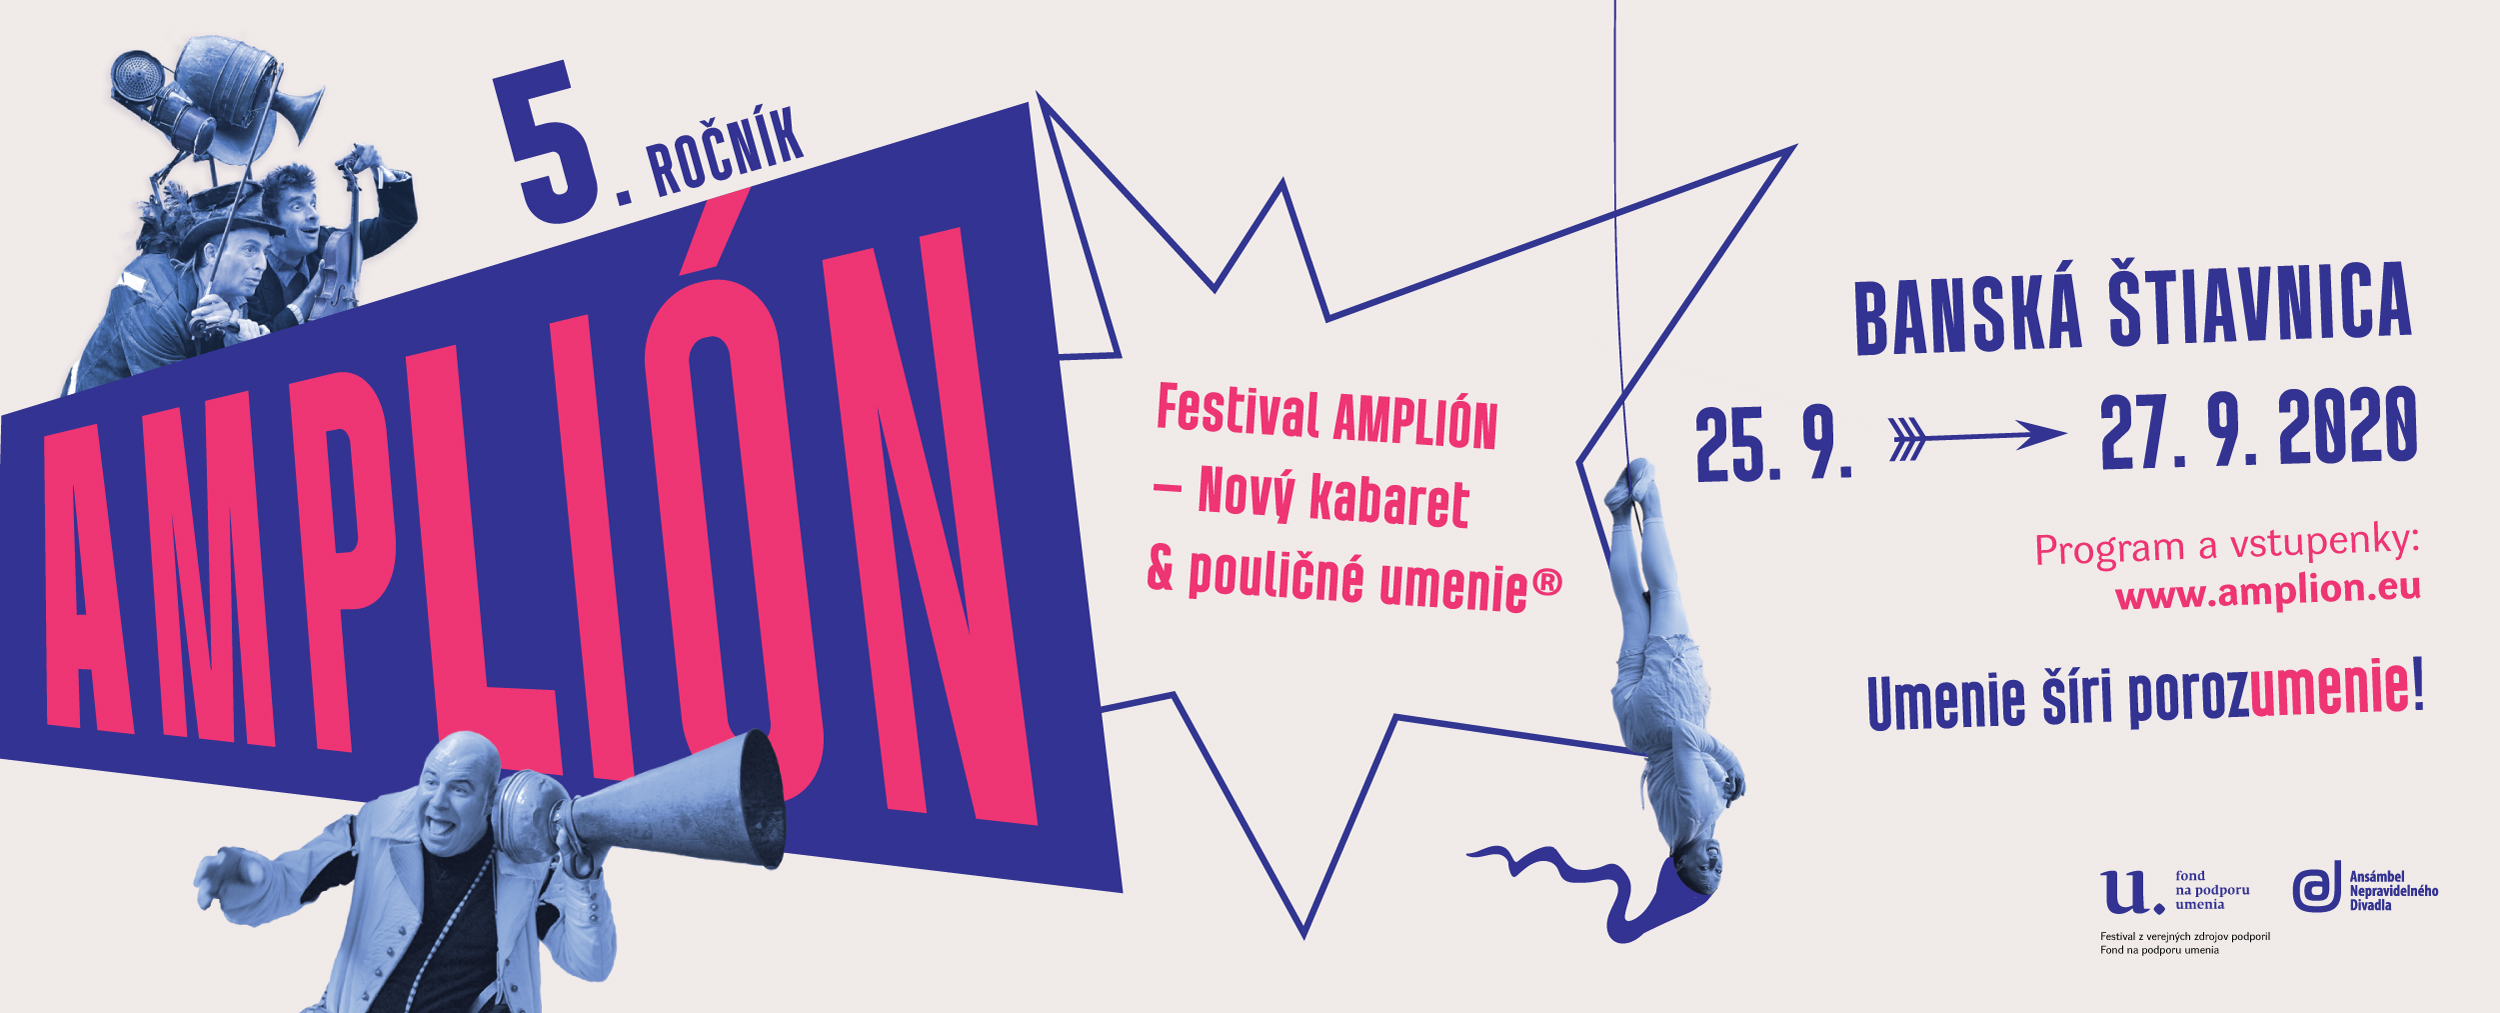 Festival AMPLIÓN – Nový kabaret & pouličné umenie